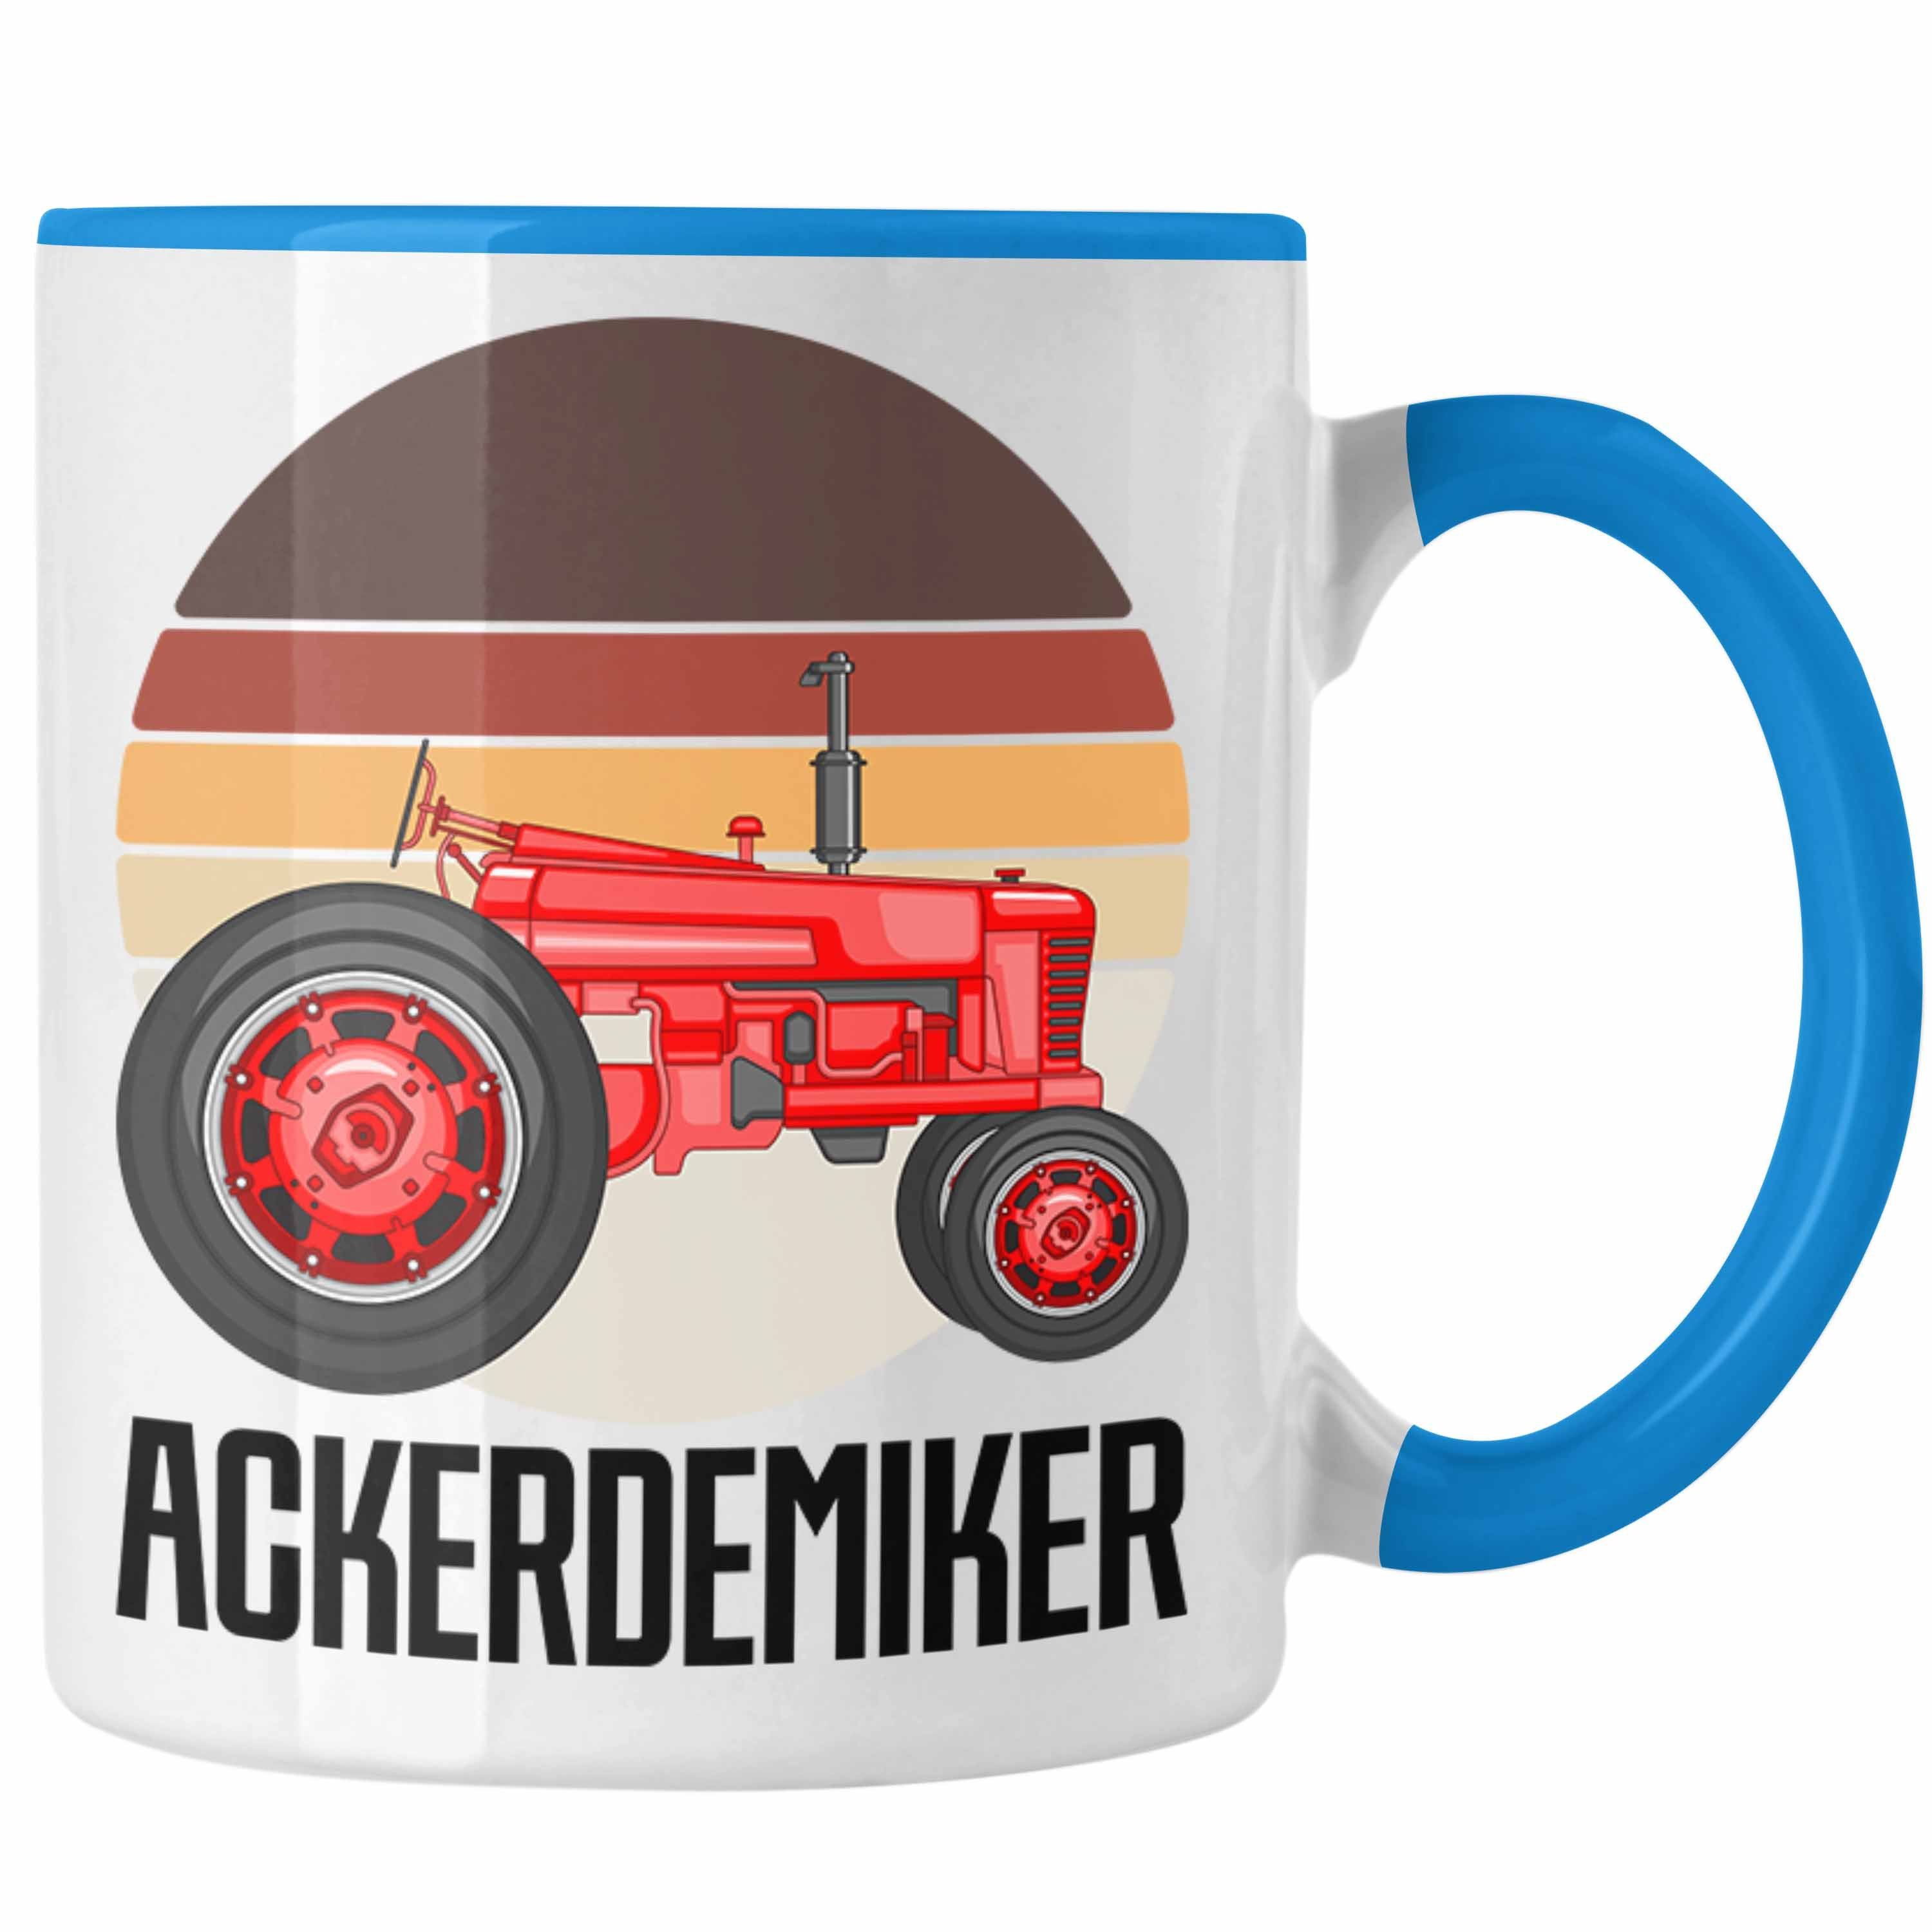 Trendation Tasse Ackerdemiker Tasse Geschenk für Landwirt Kaffee-Becher Geschenkidee Ba Blau